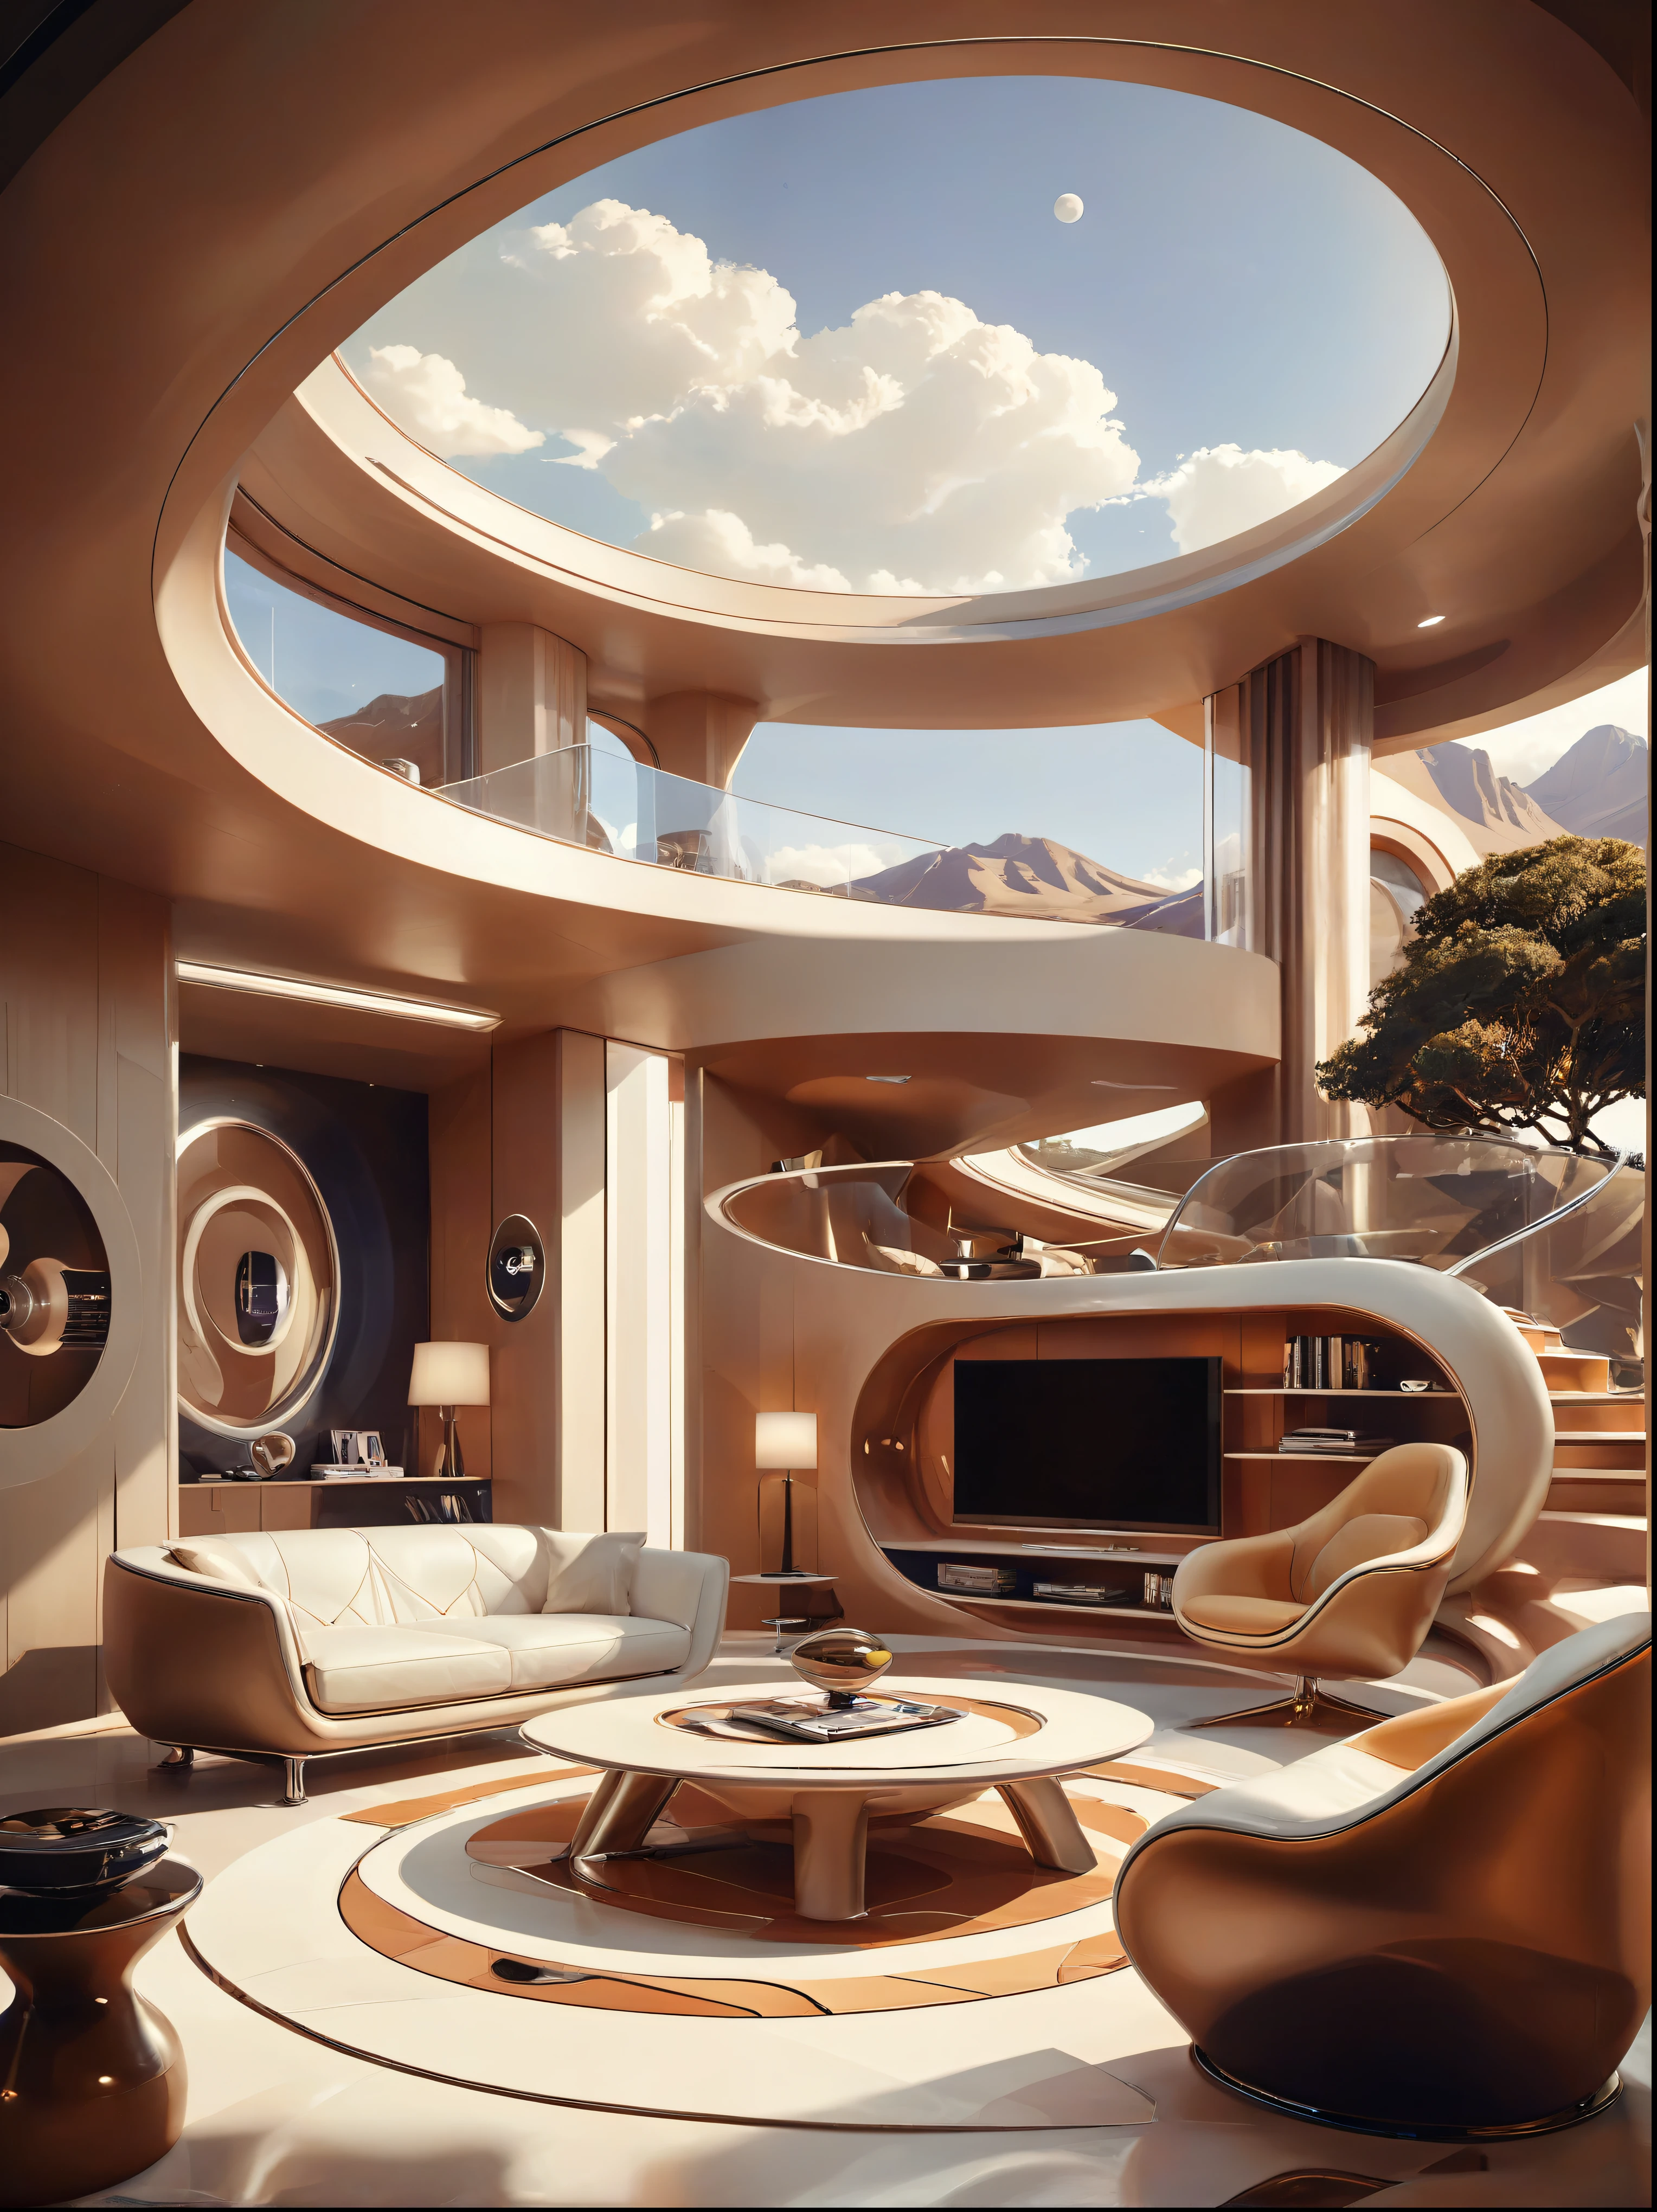 未來家居的客廳研究概念融合了有機流動性、圓形和幾何形狀，並運用藝術想像力渲染房屋和風景, 